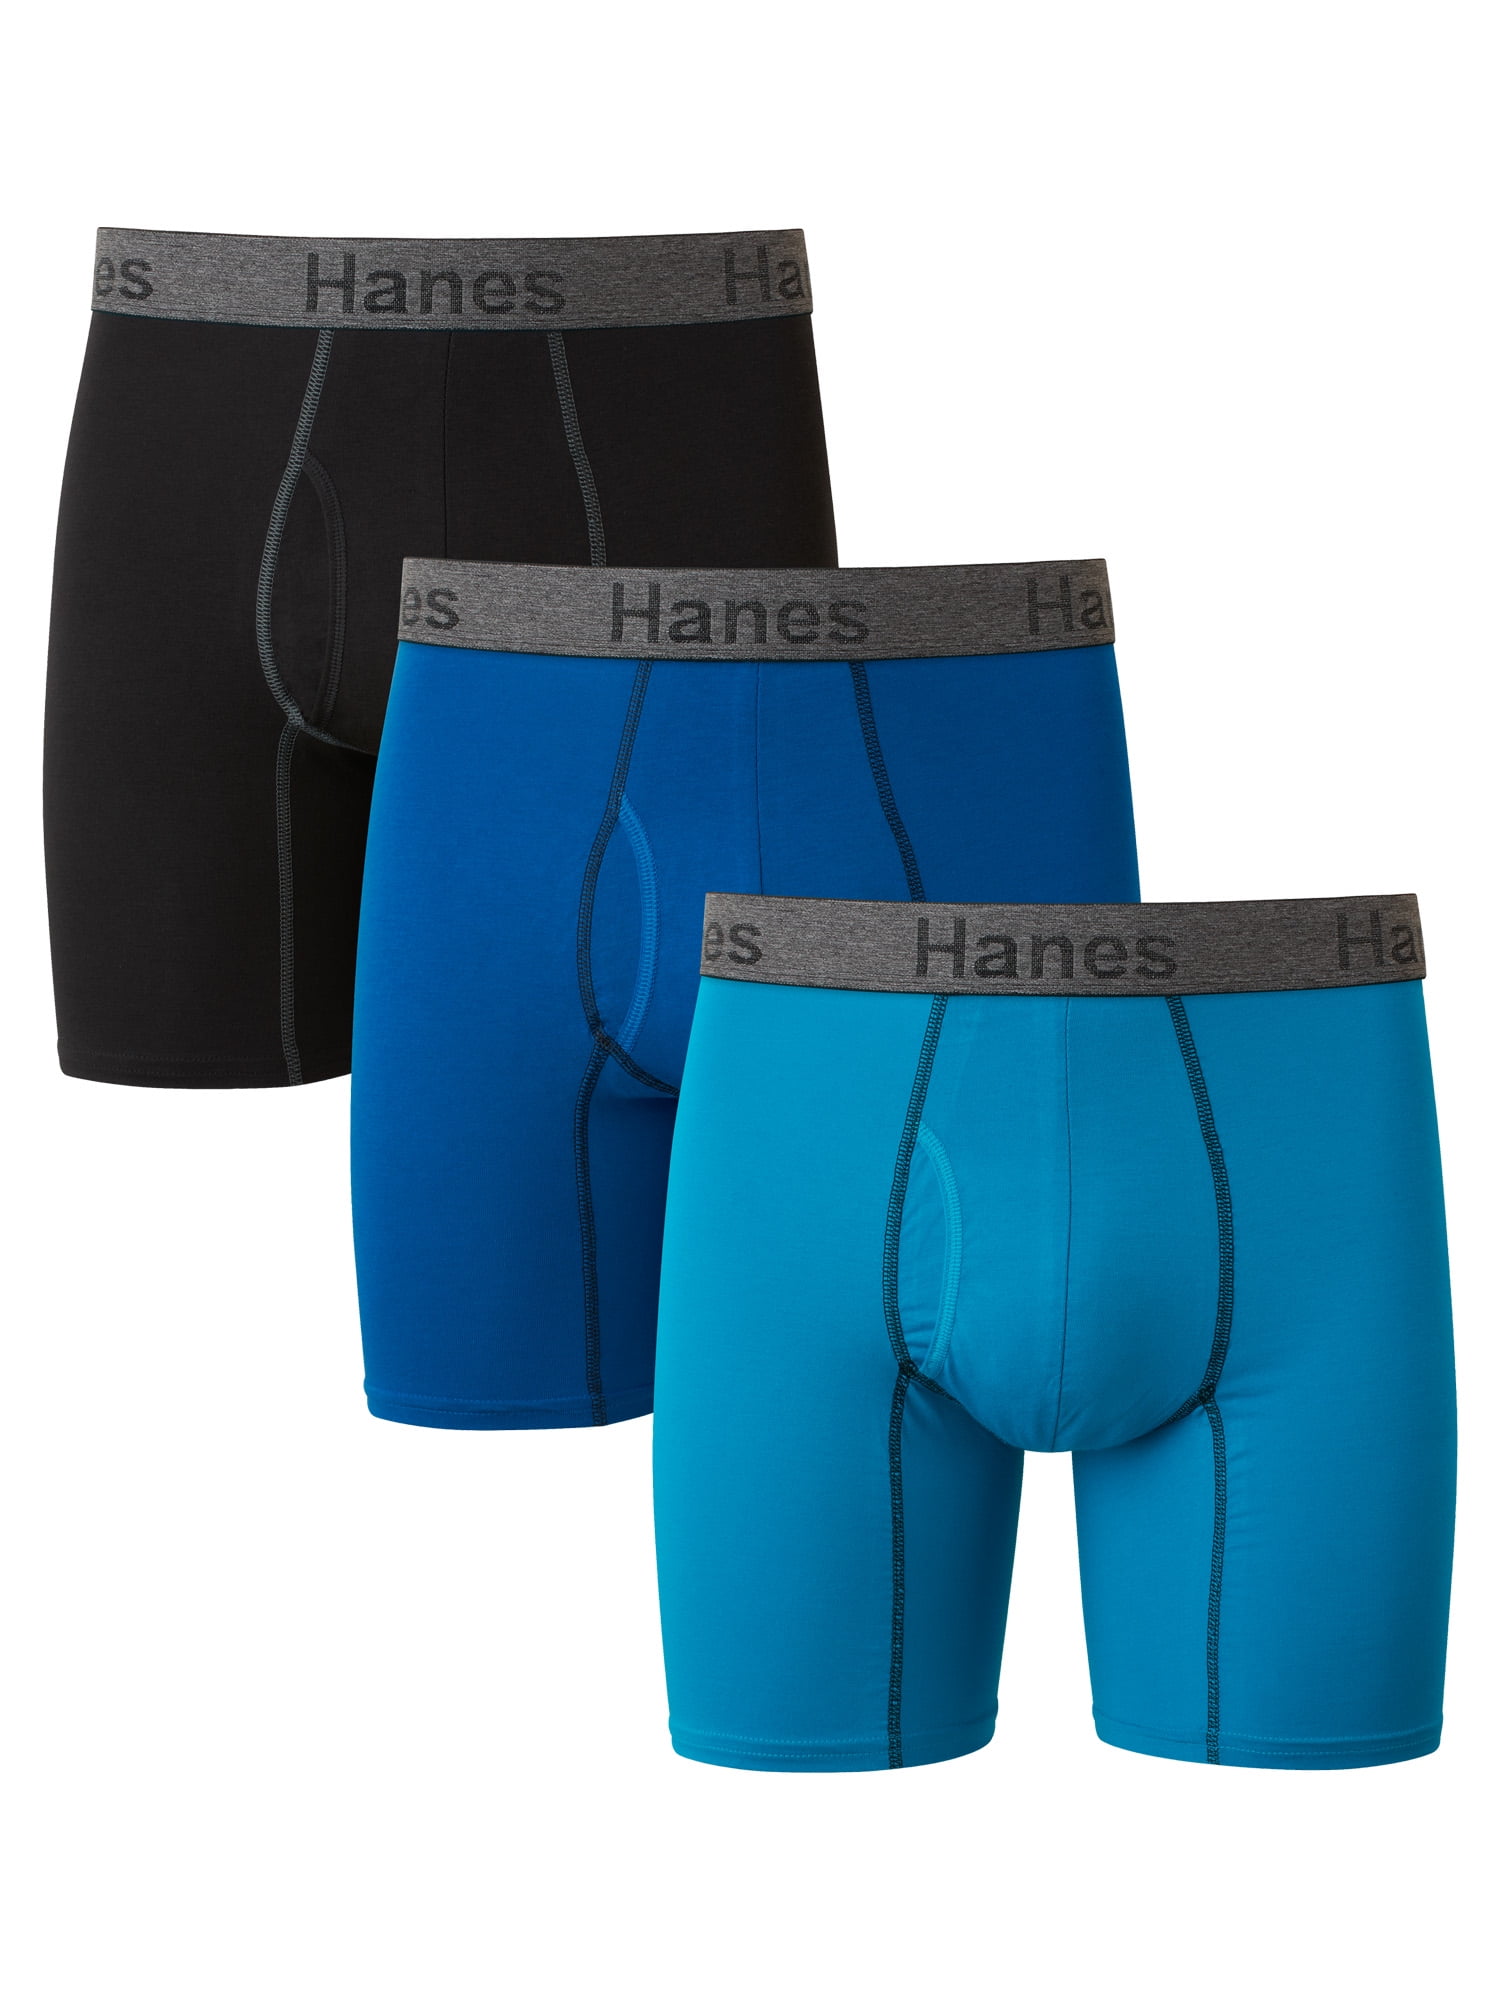 Hanes Men's Comfort Flex Fit Ultra Soft Cotton Stretch Boxer Briefs, 3 Pack,  Sizes S-3XL 